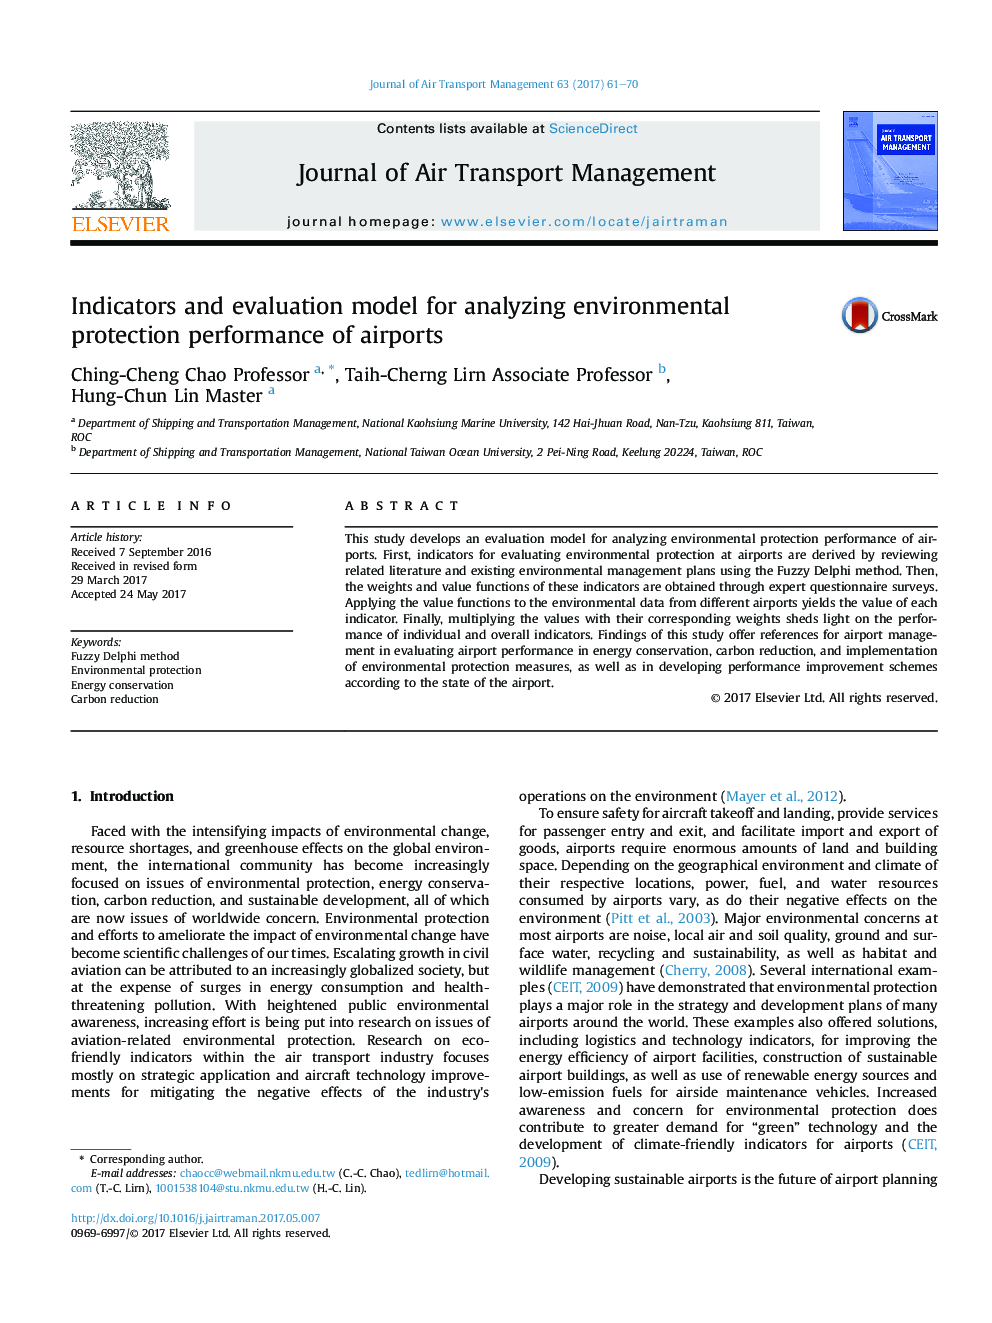 شاخص ها و مدل ارزیابی برای تجزیه و تحلیل عملکرد حفاظت از محیط زیست فرودگاه 